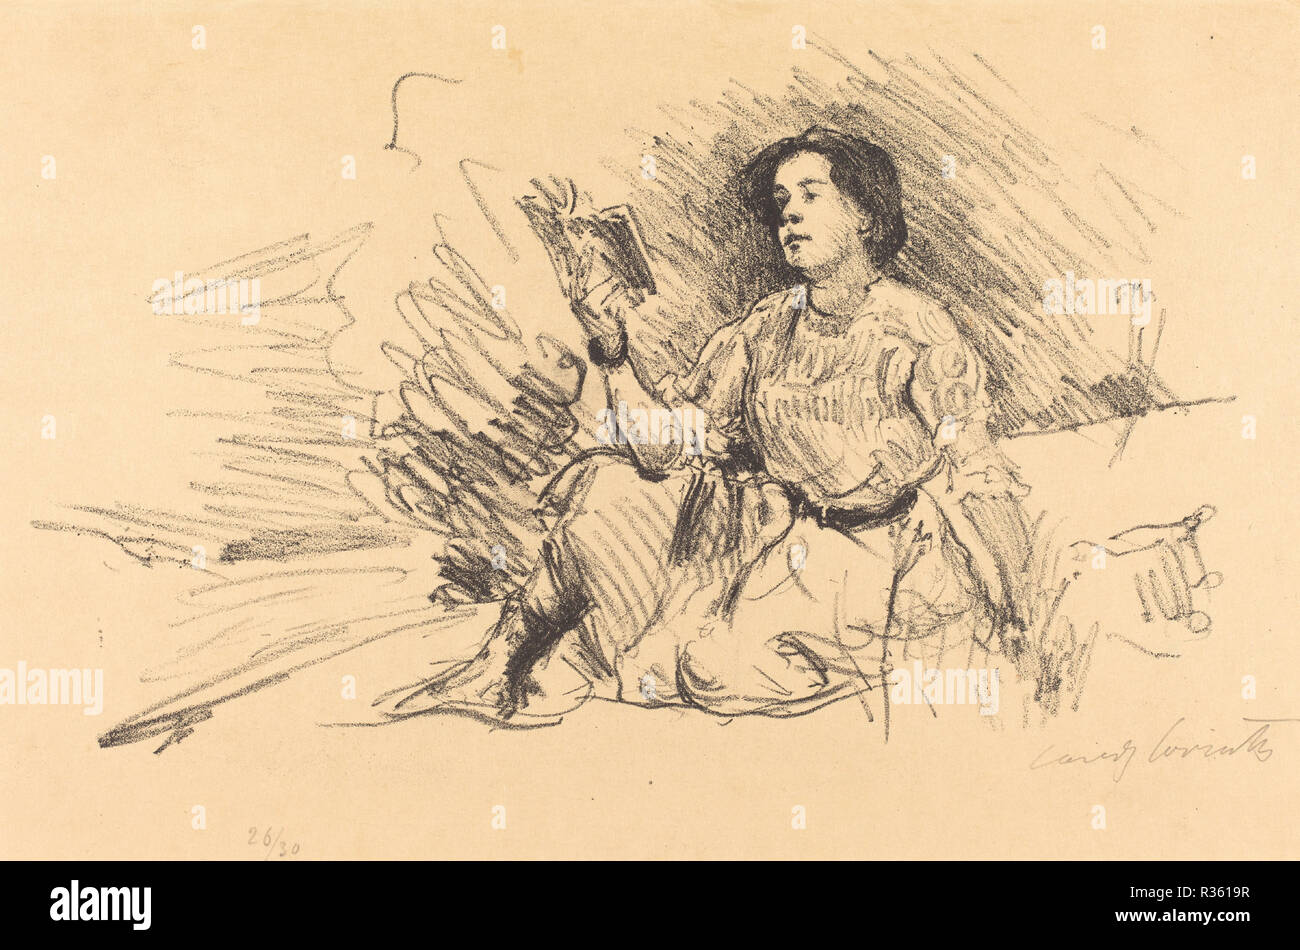 Lesendes Mädchen Girl (Lecture). En date du : 1911. Dimensions : 24,8 x 37,1 plaque : cm (9 3/4 x 14 5/8 in.) feuille : 26,8 x 40 cm (10 9/16 x 15 3/4 in.). Technique : lithographie en noir sur papier Japon. Musée : National Gallery of Art, Washington DC. Auteur : Lovis Corinth. Banque D'Images